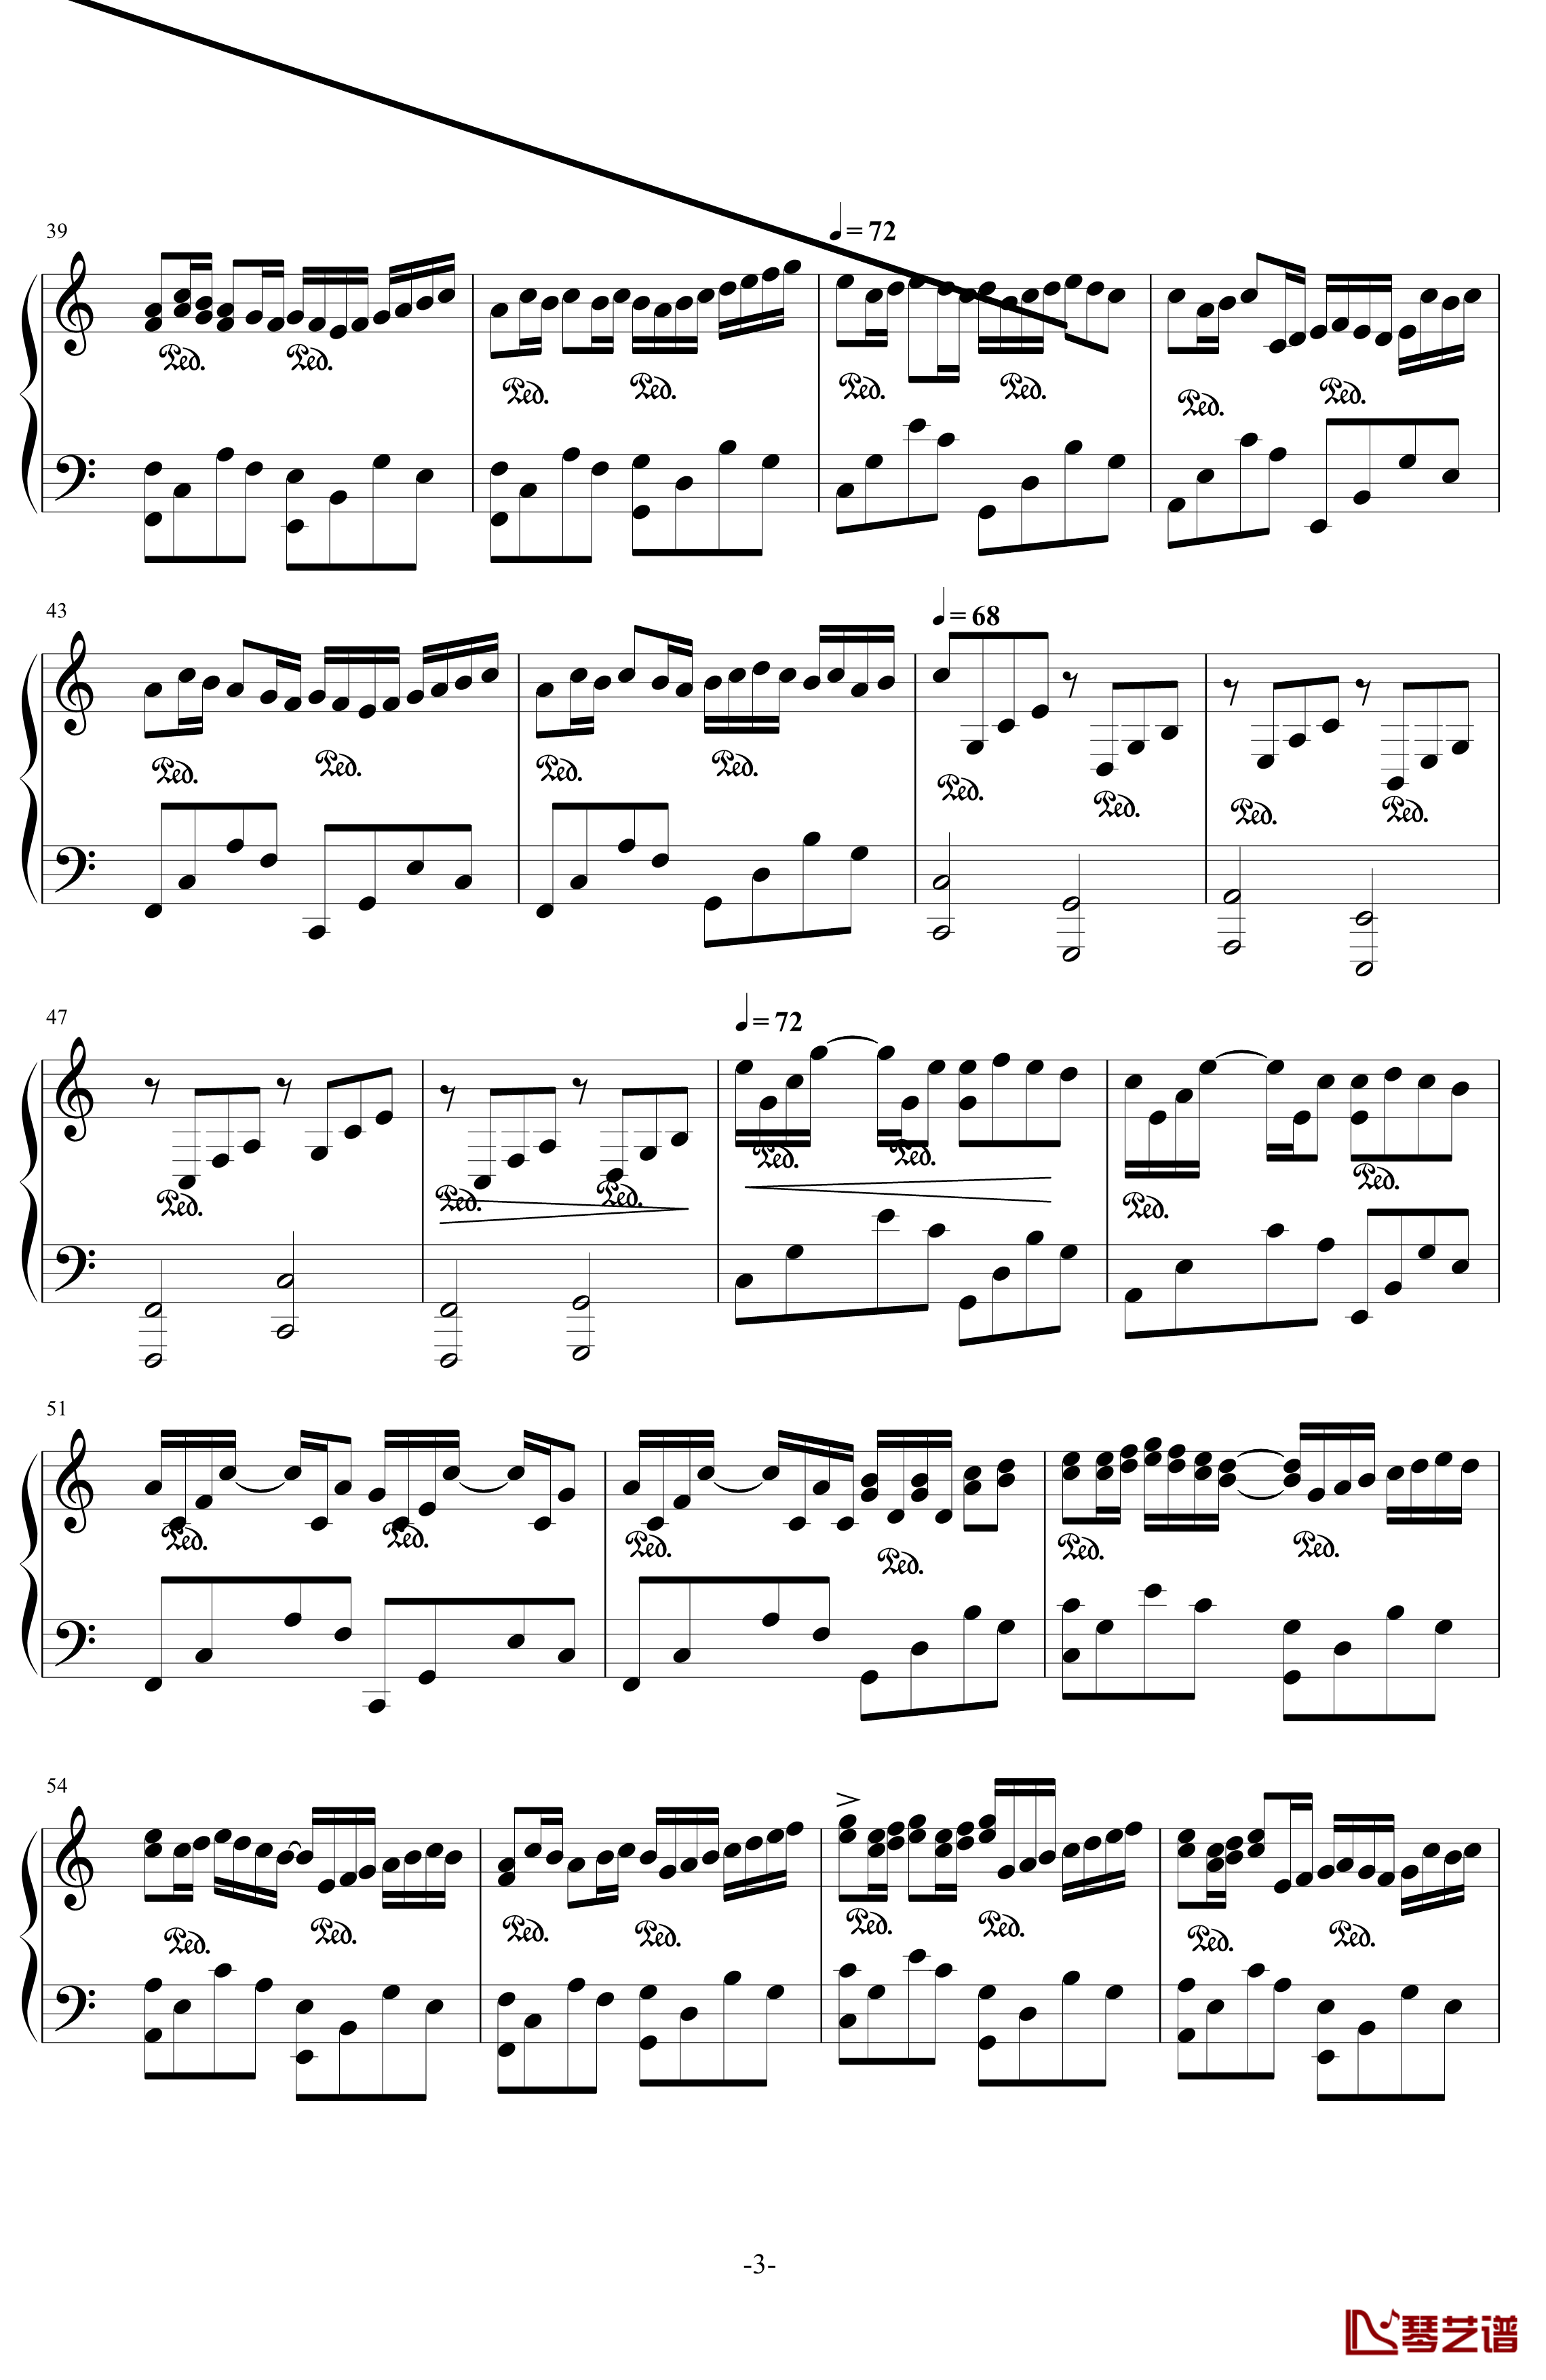 卡农钢琴谱-最有可能超越乔治温斯顿国产版-帕赫贝尔-Pachelbel3